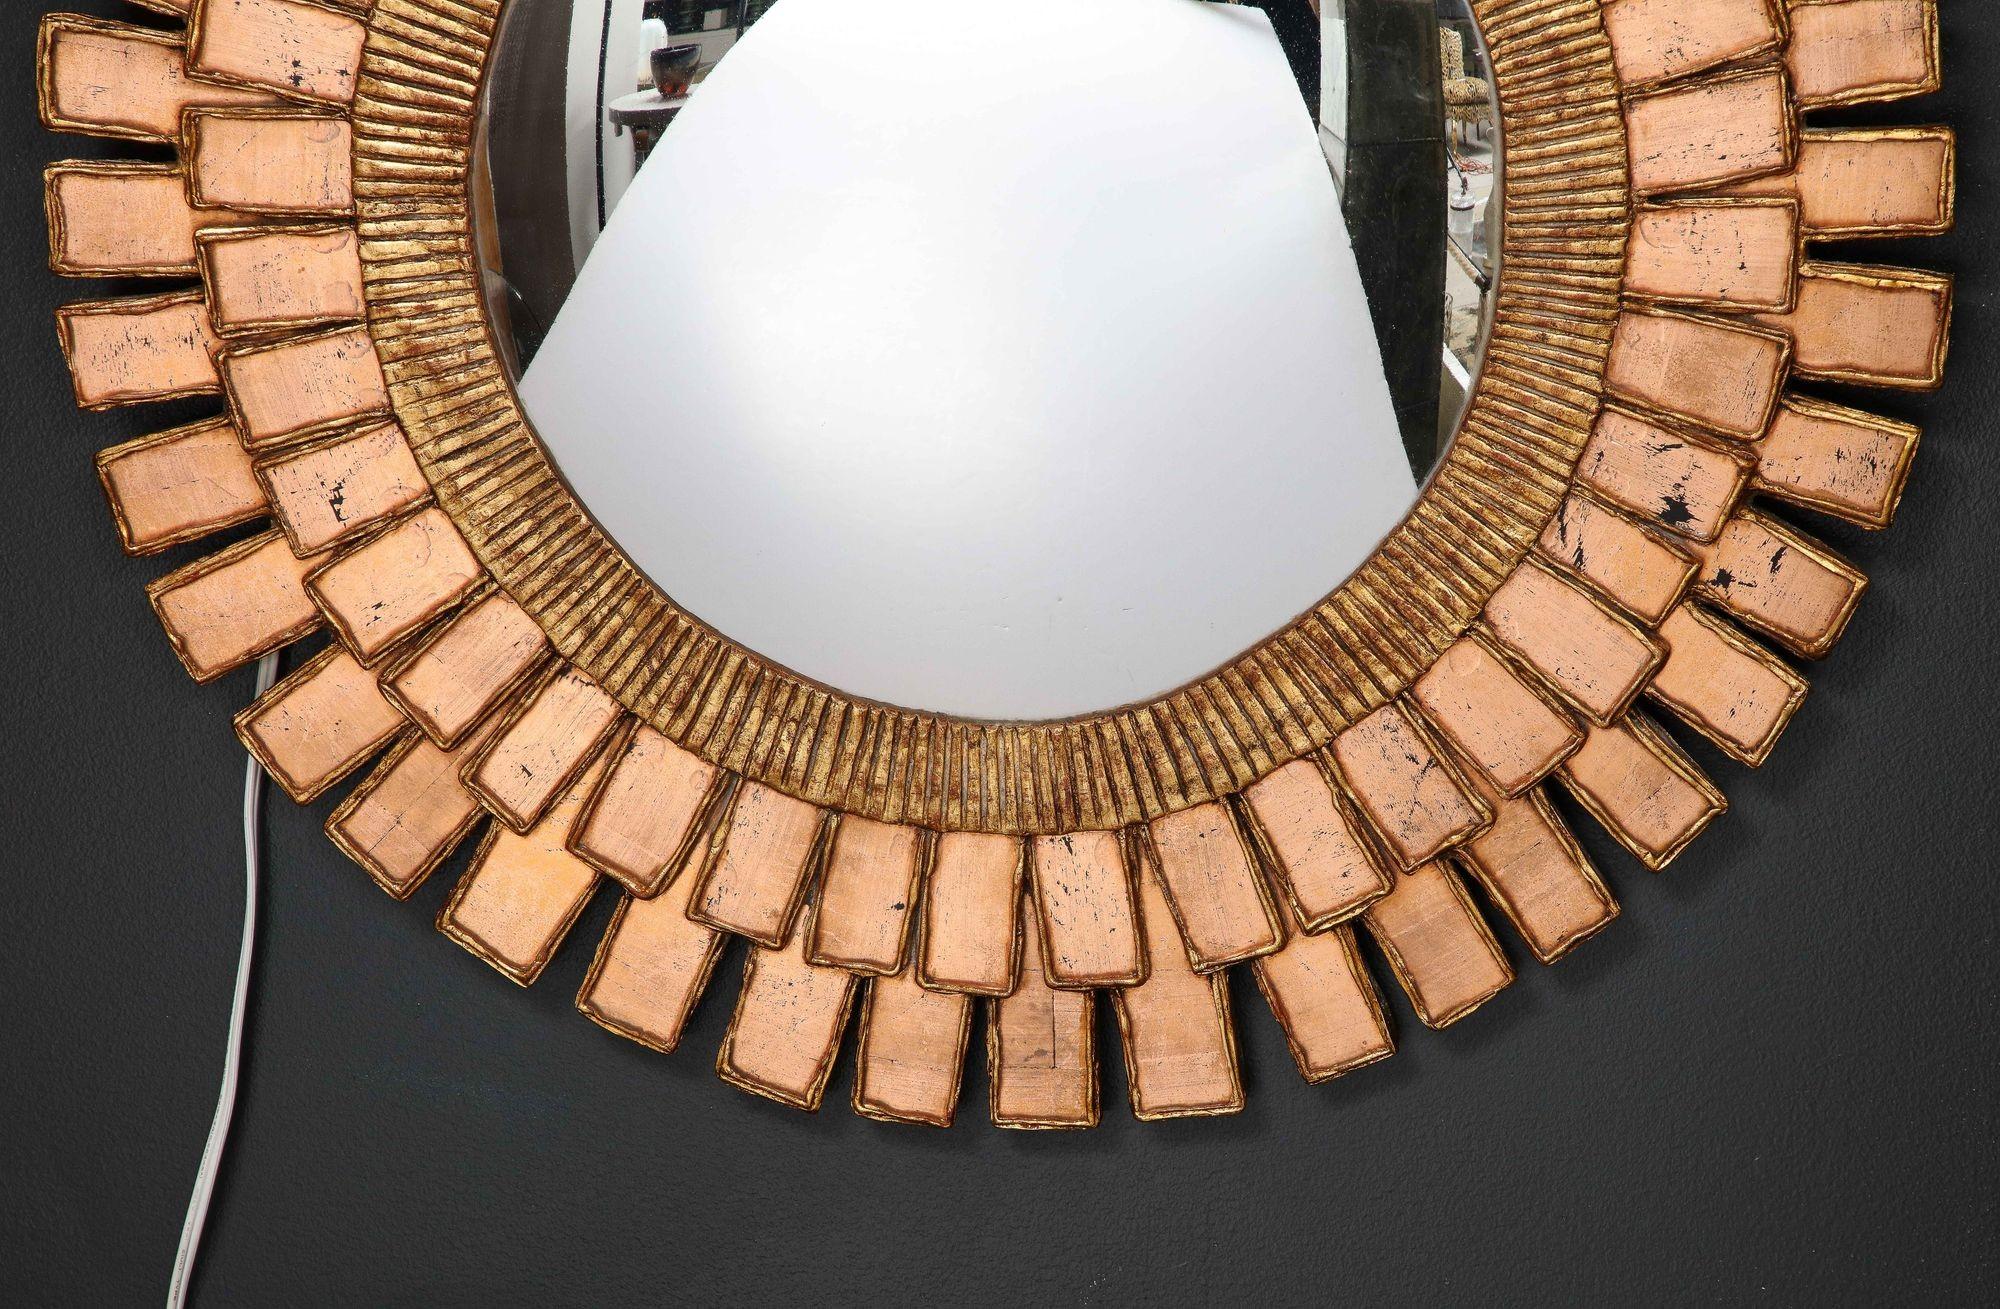 Un superbe miroir en bois et résine de style Line Vautrin.